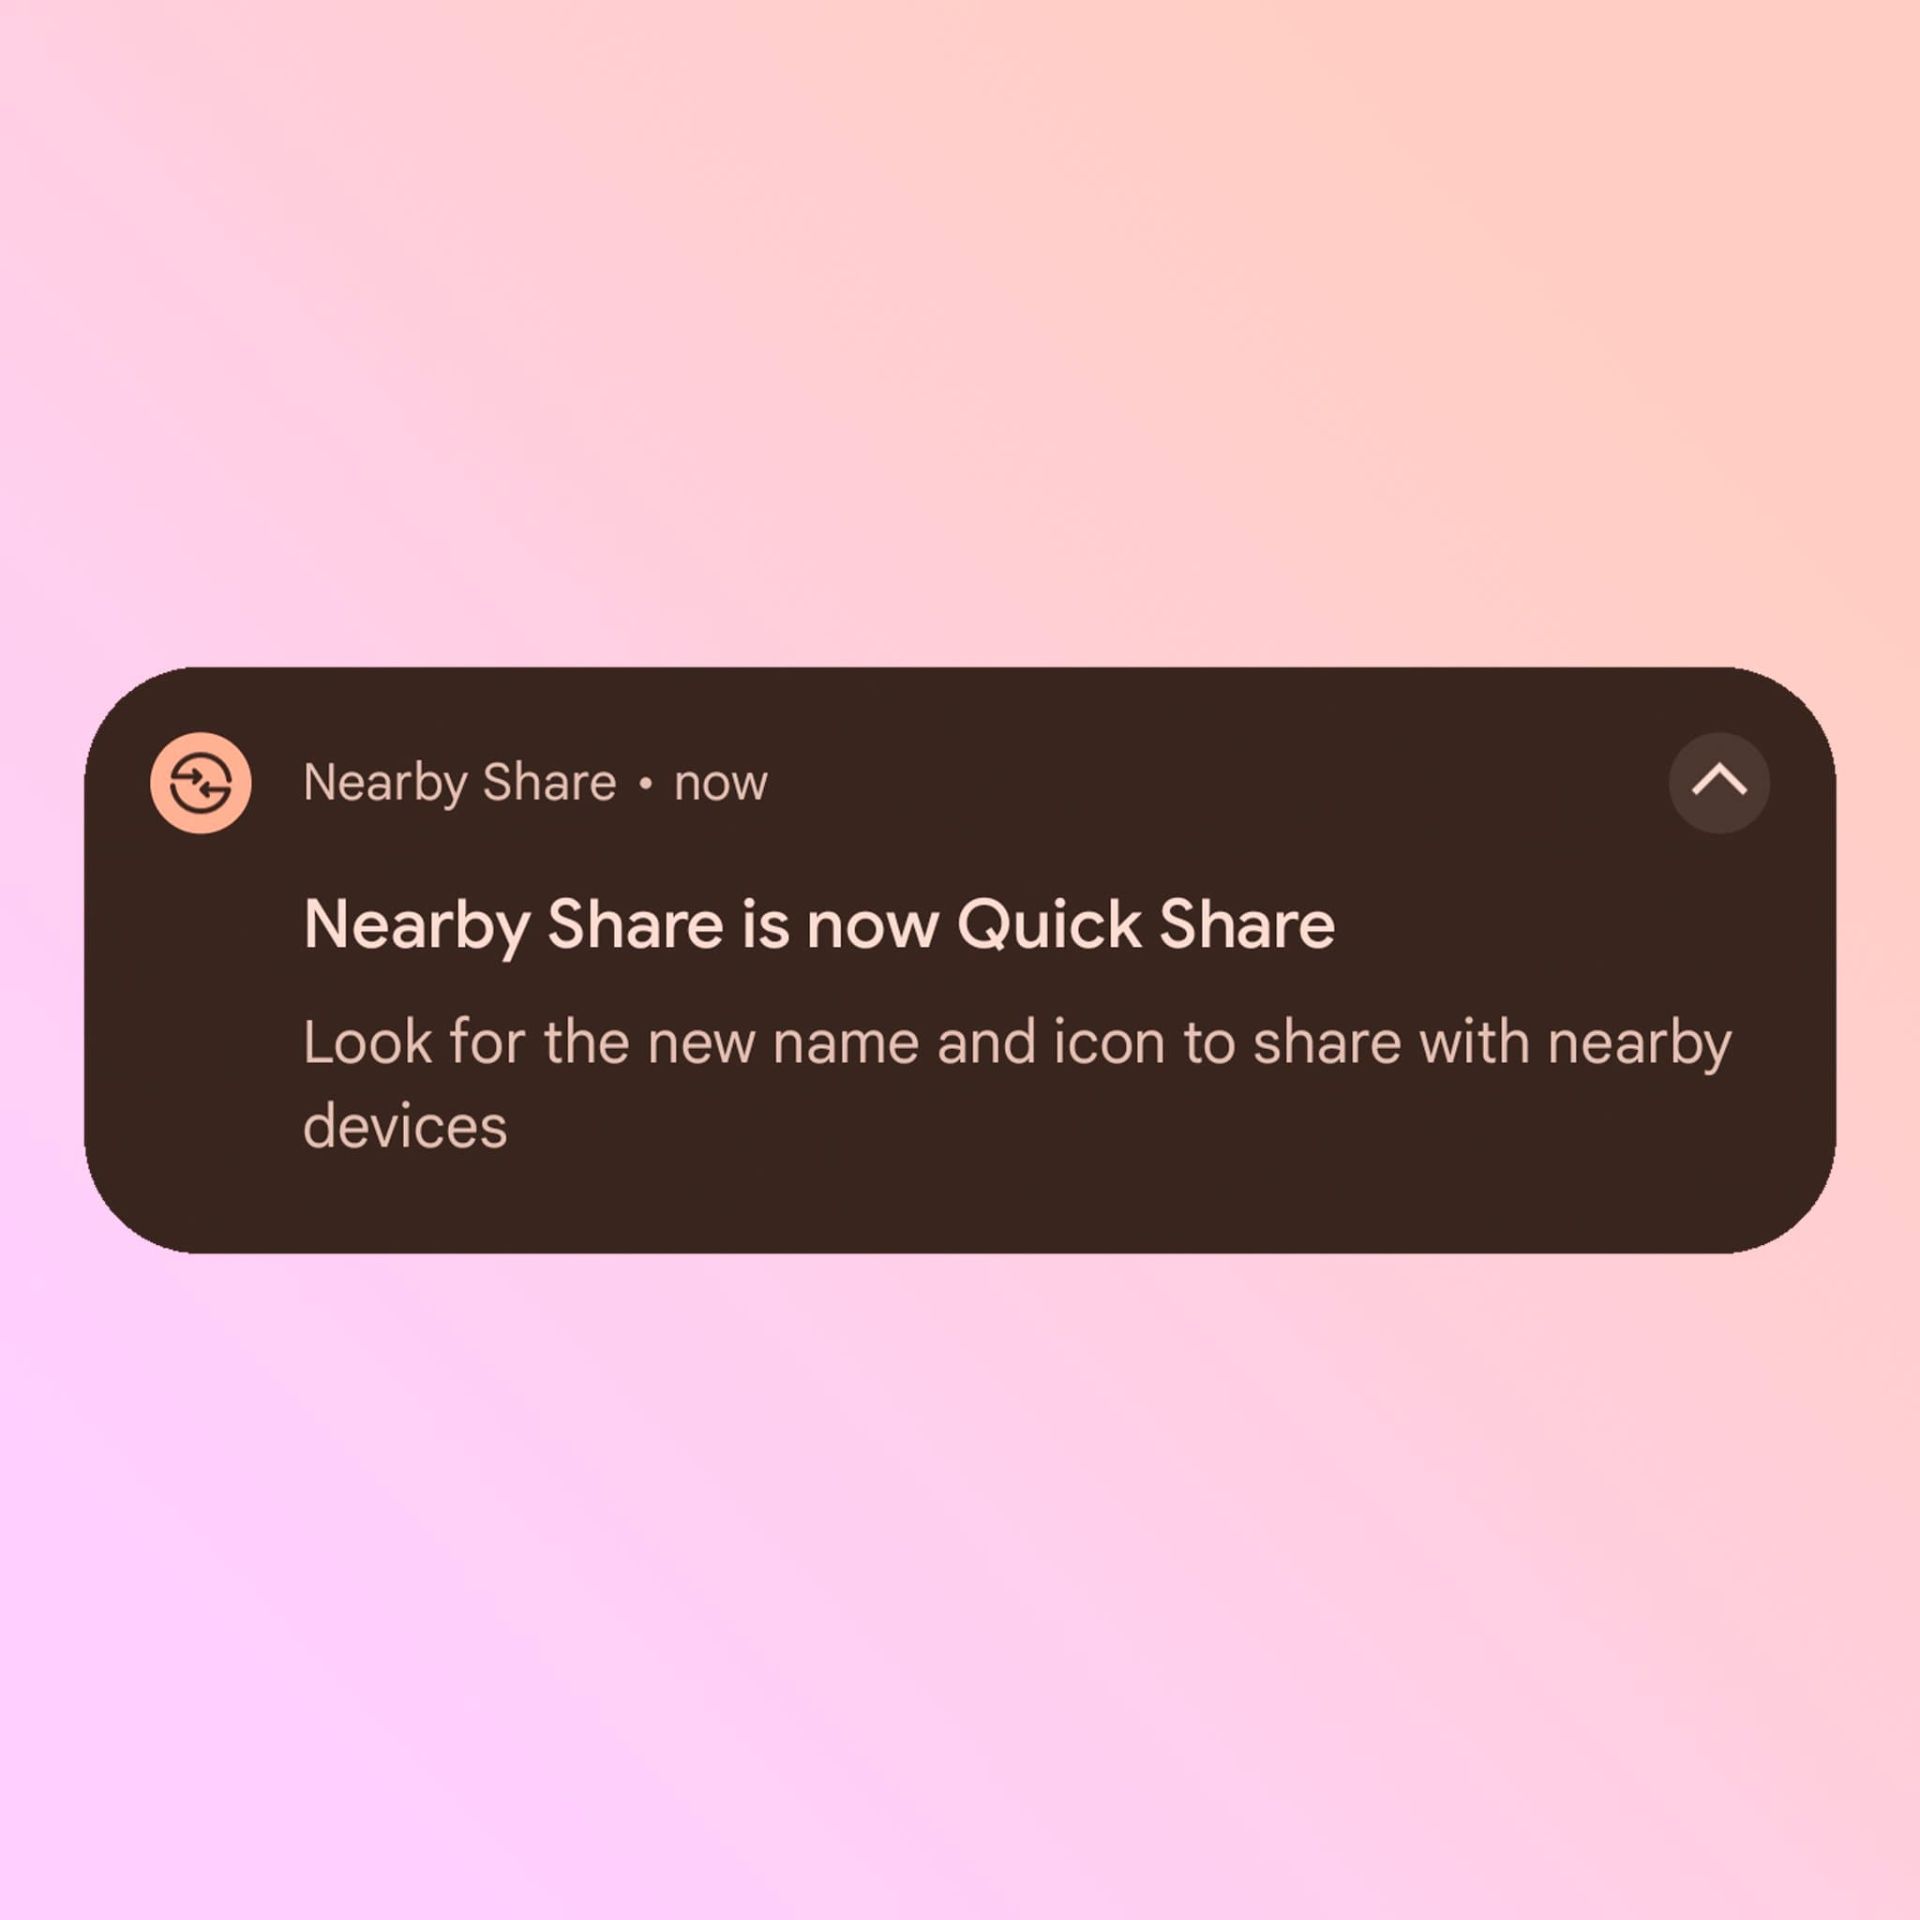 اعلان گوگل پلی مبنی‌بر تغییر نام Nearby Share به Quick Share اندروید